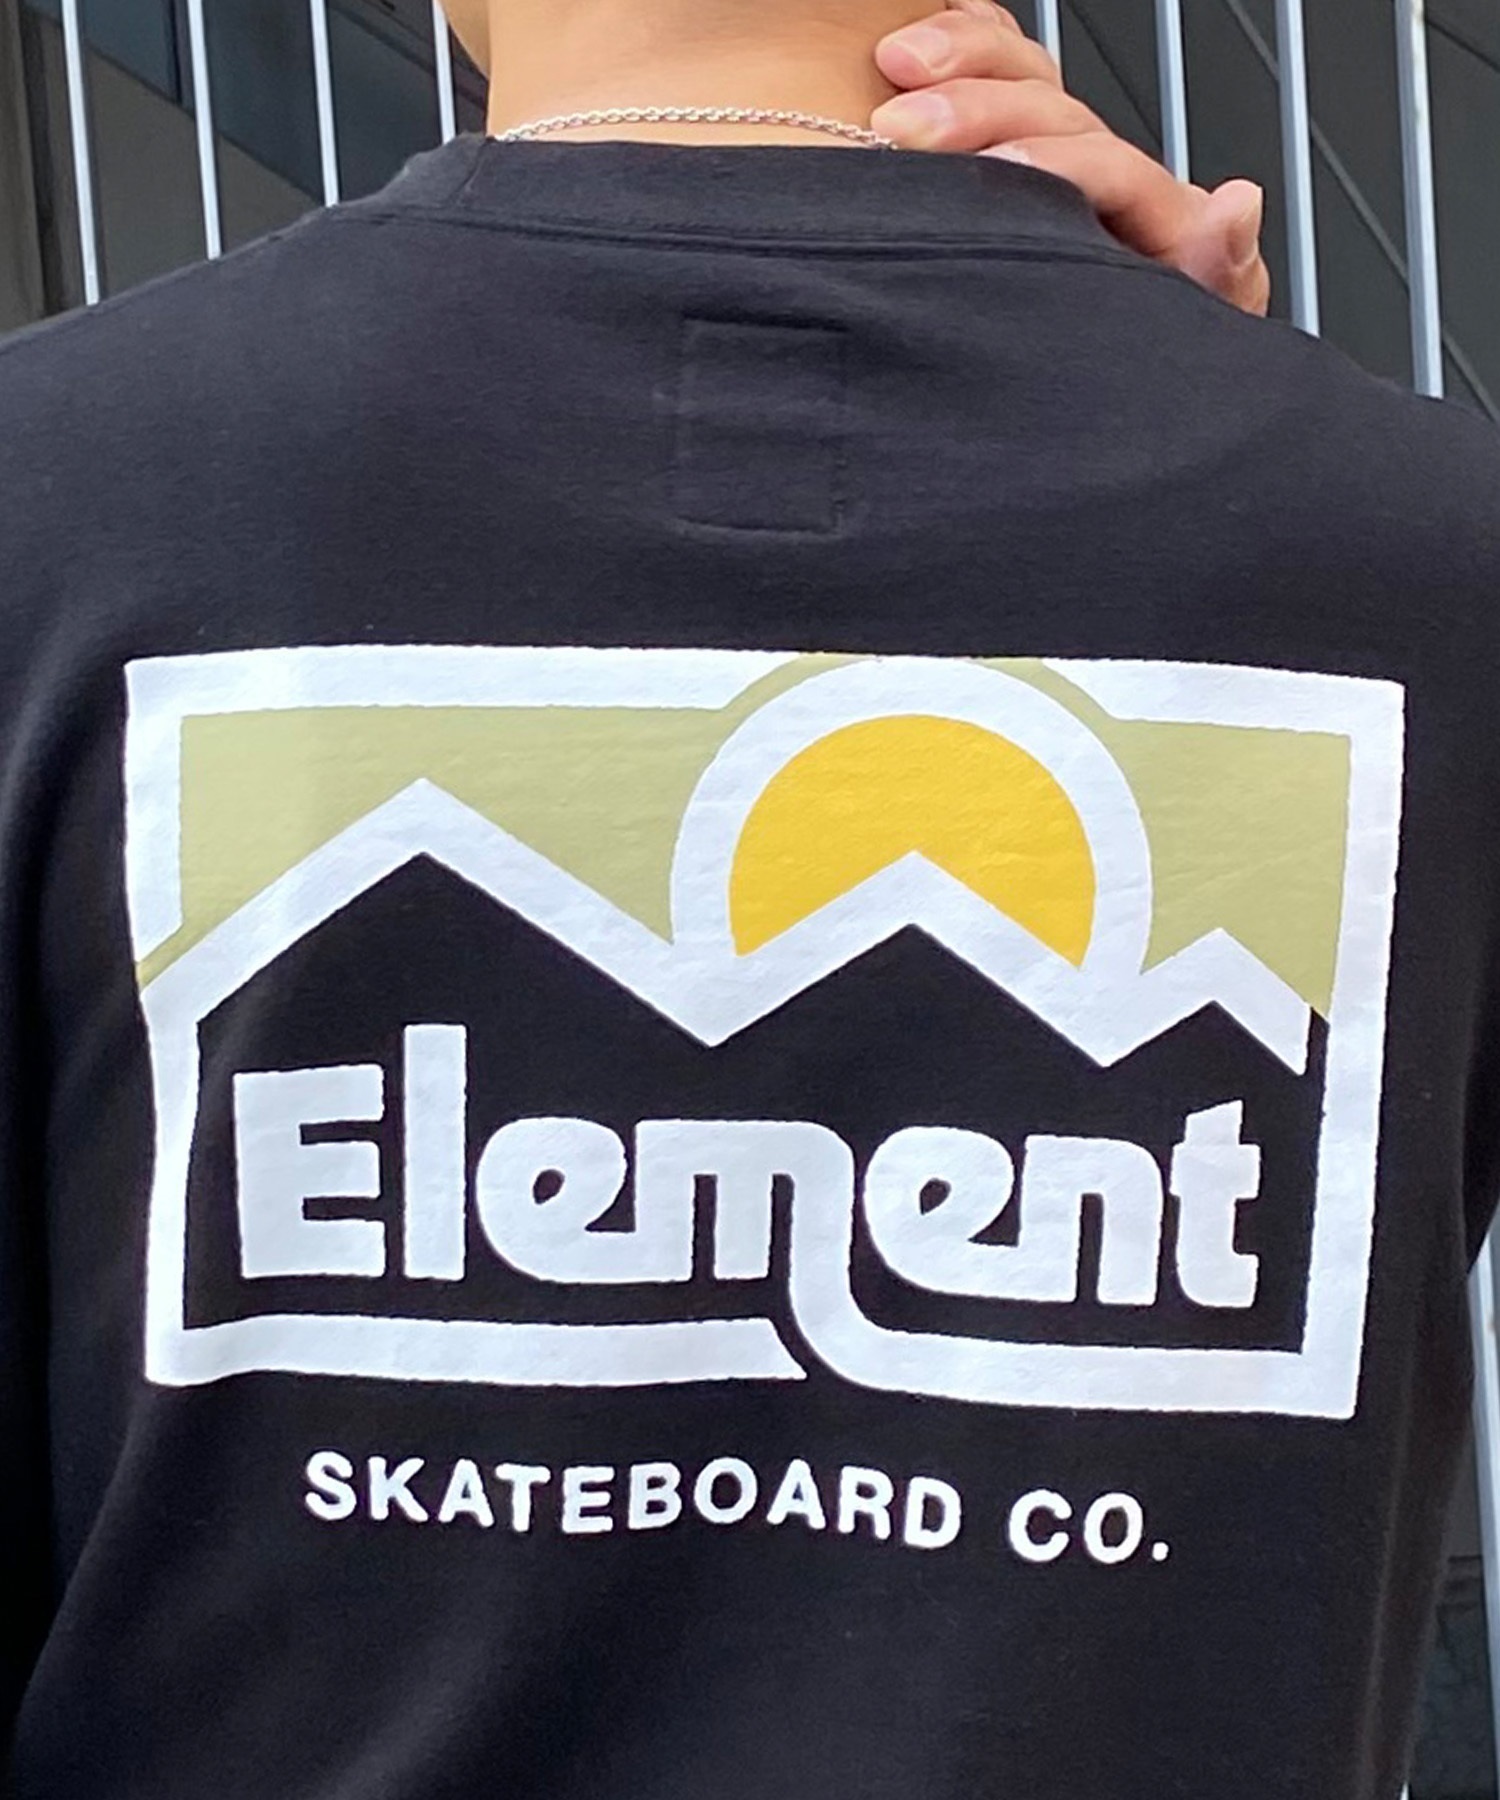 ELEMENT エレメント メンズ トレーナー クルーネック スウェット バックプリント サイドポケット 裏毛 BE021-006(FBK-M)